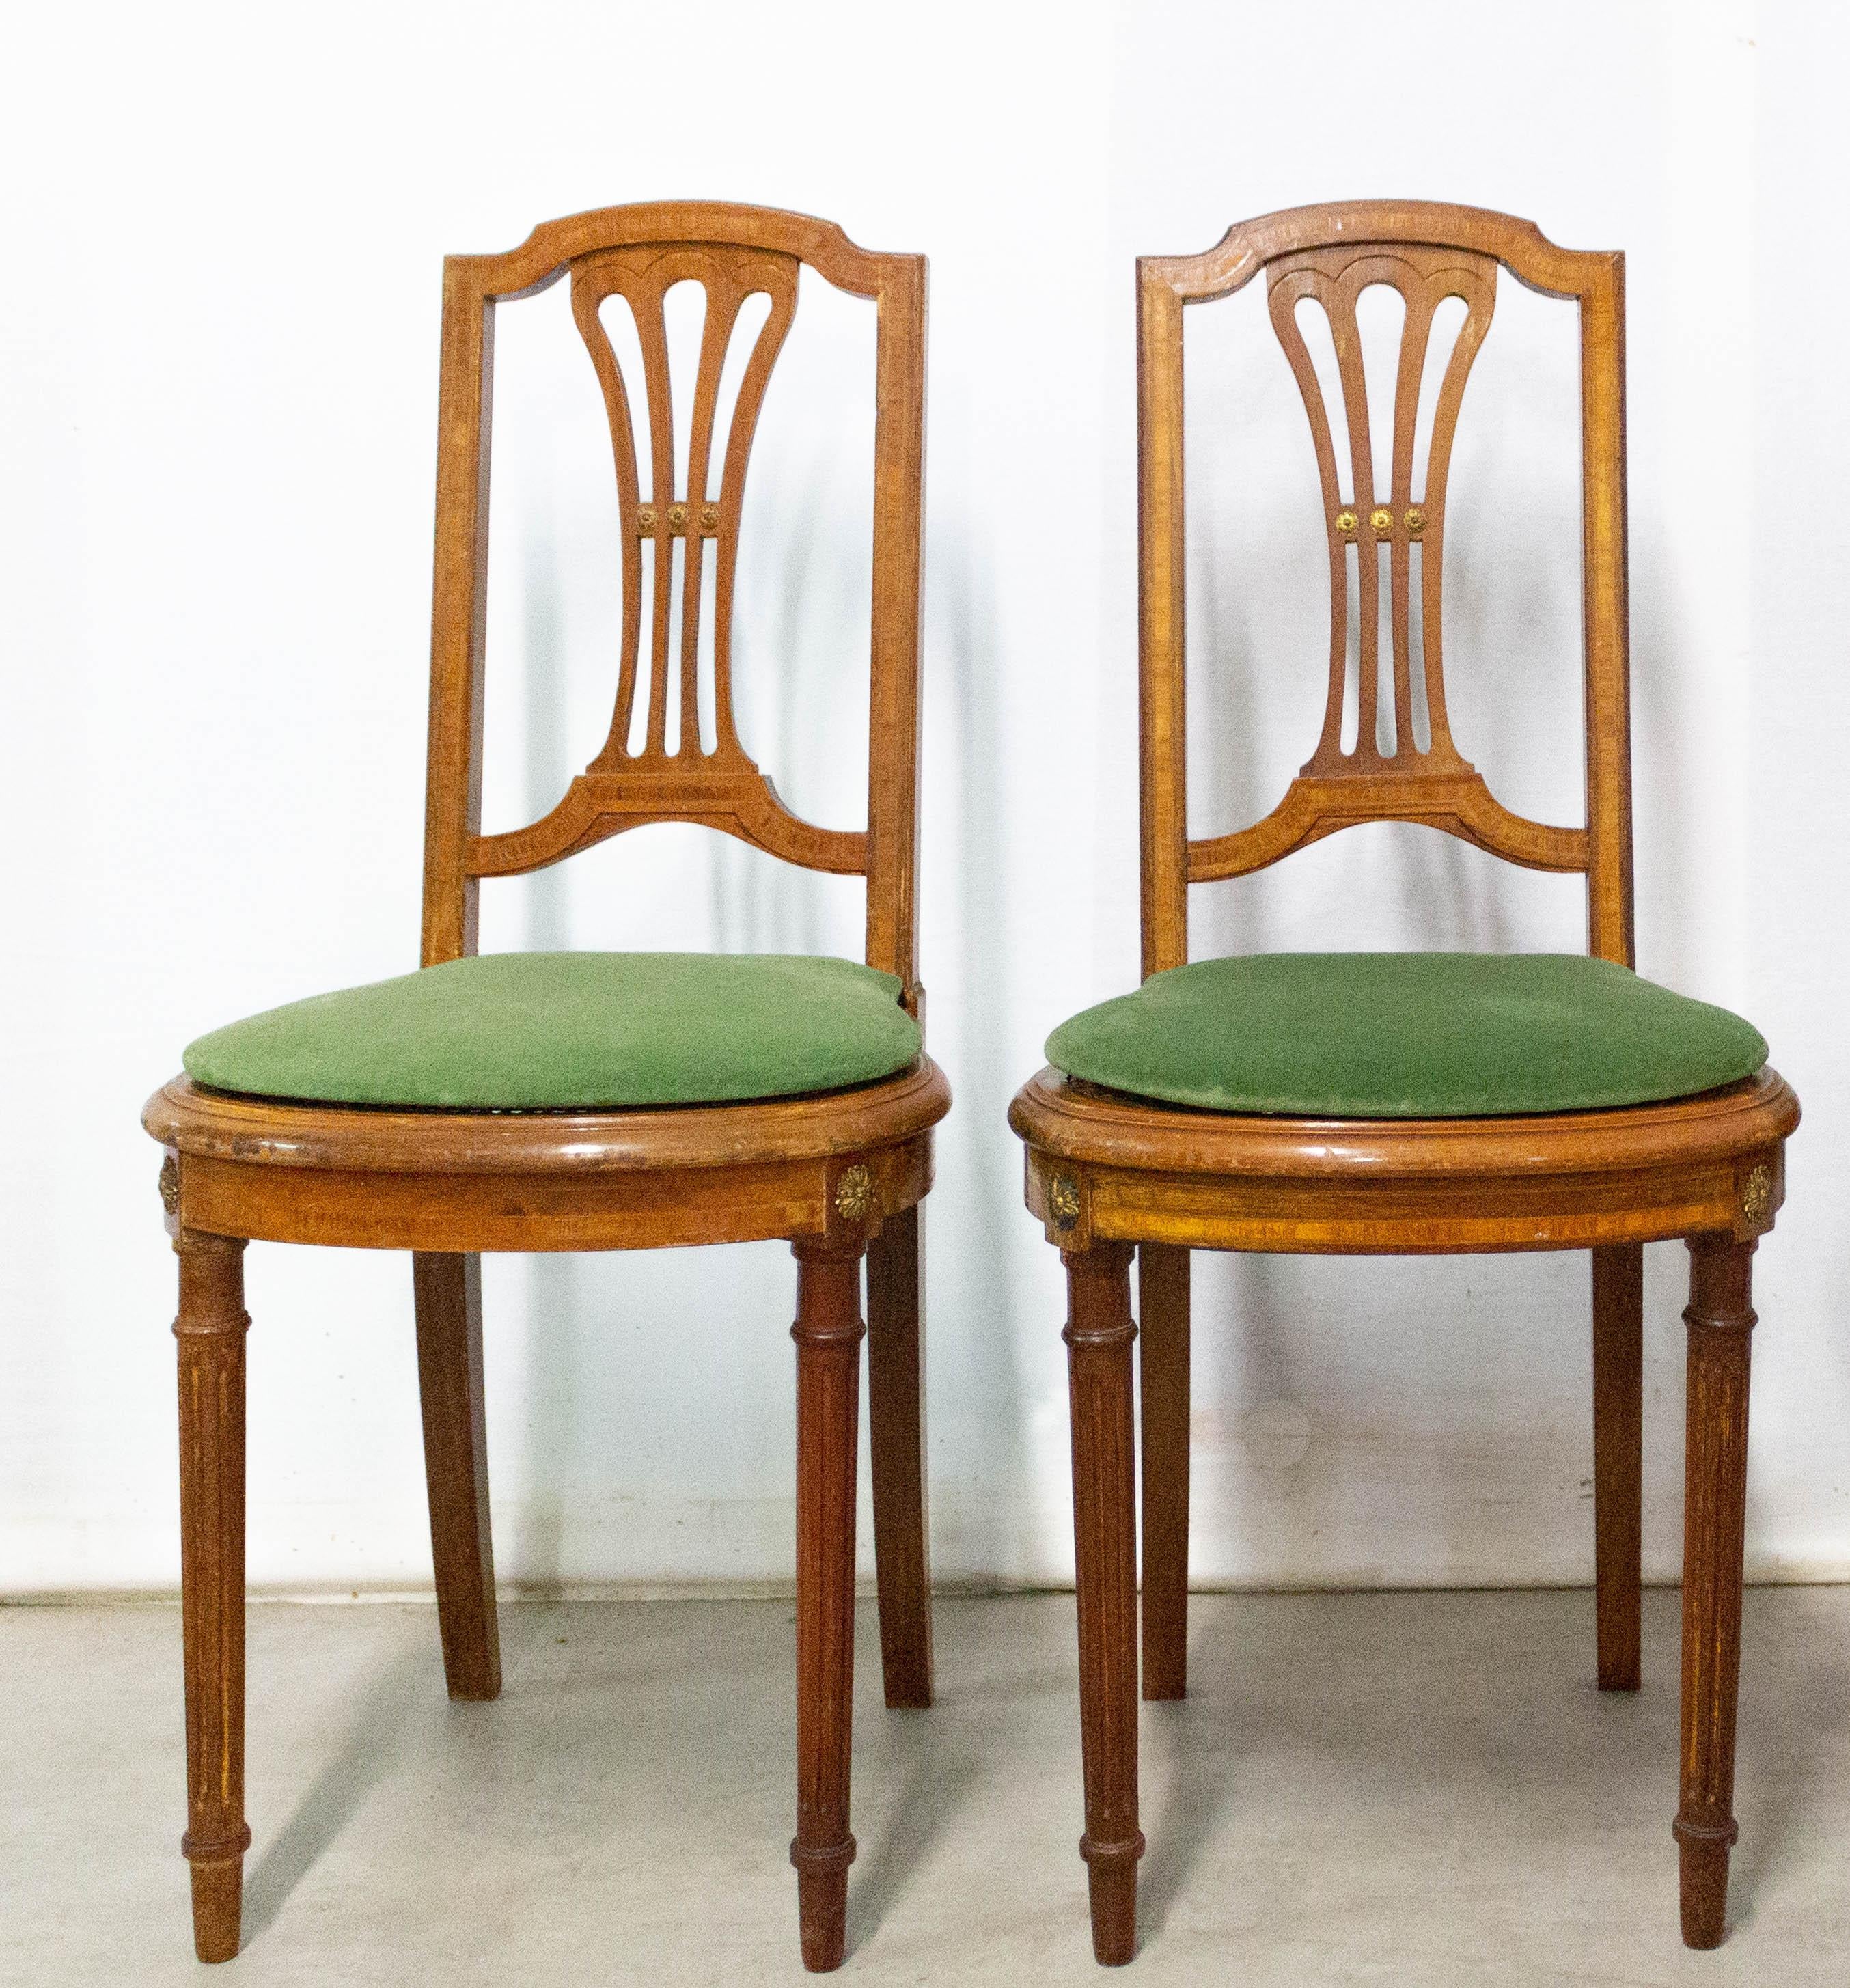 Satz von drei französischen Esszimmerstühlen Ende 19. Jahrhundert
Die Stühle sind mit Rohrgeflecht und aus exotischem Holz.
Wenn Sie es wünschen, können wir einen dritten Stuhl mit dem Paar verkaufen.
Die 